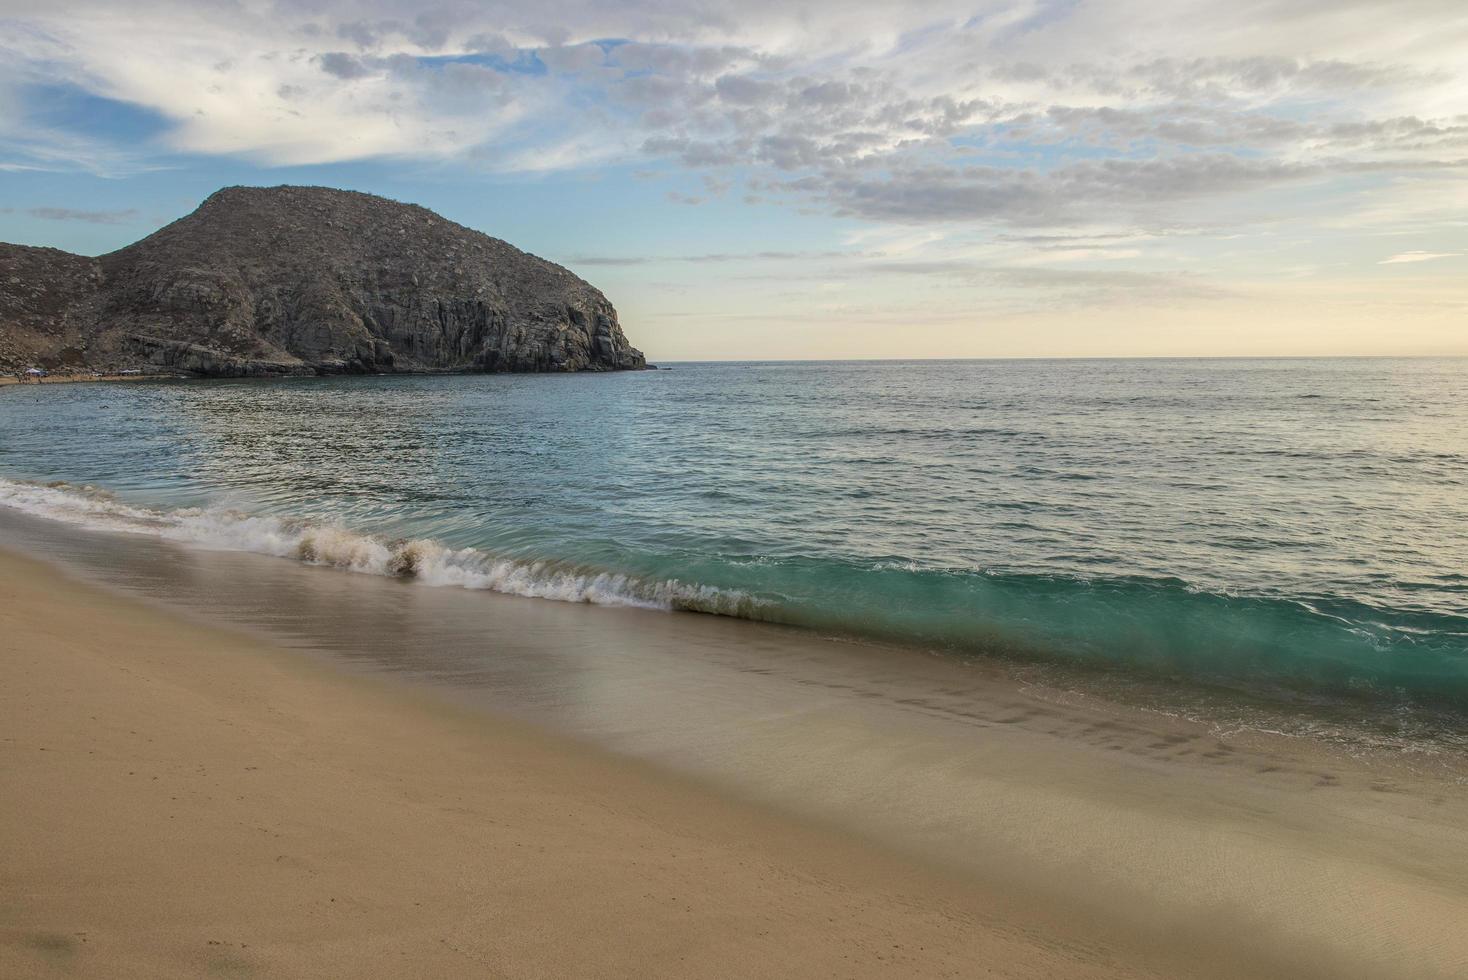 punta lobos todos santos baja kalifornien sur mexiko sonnenuntergang am strand mit bergen im hintergrund und wellen, die am strand brechen foto